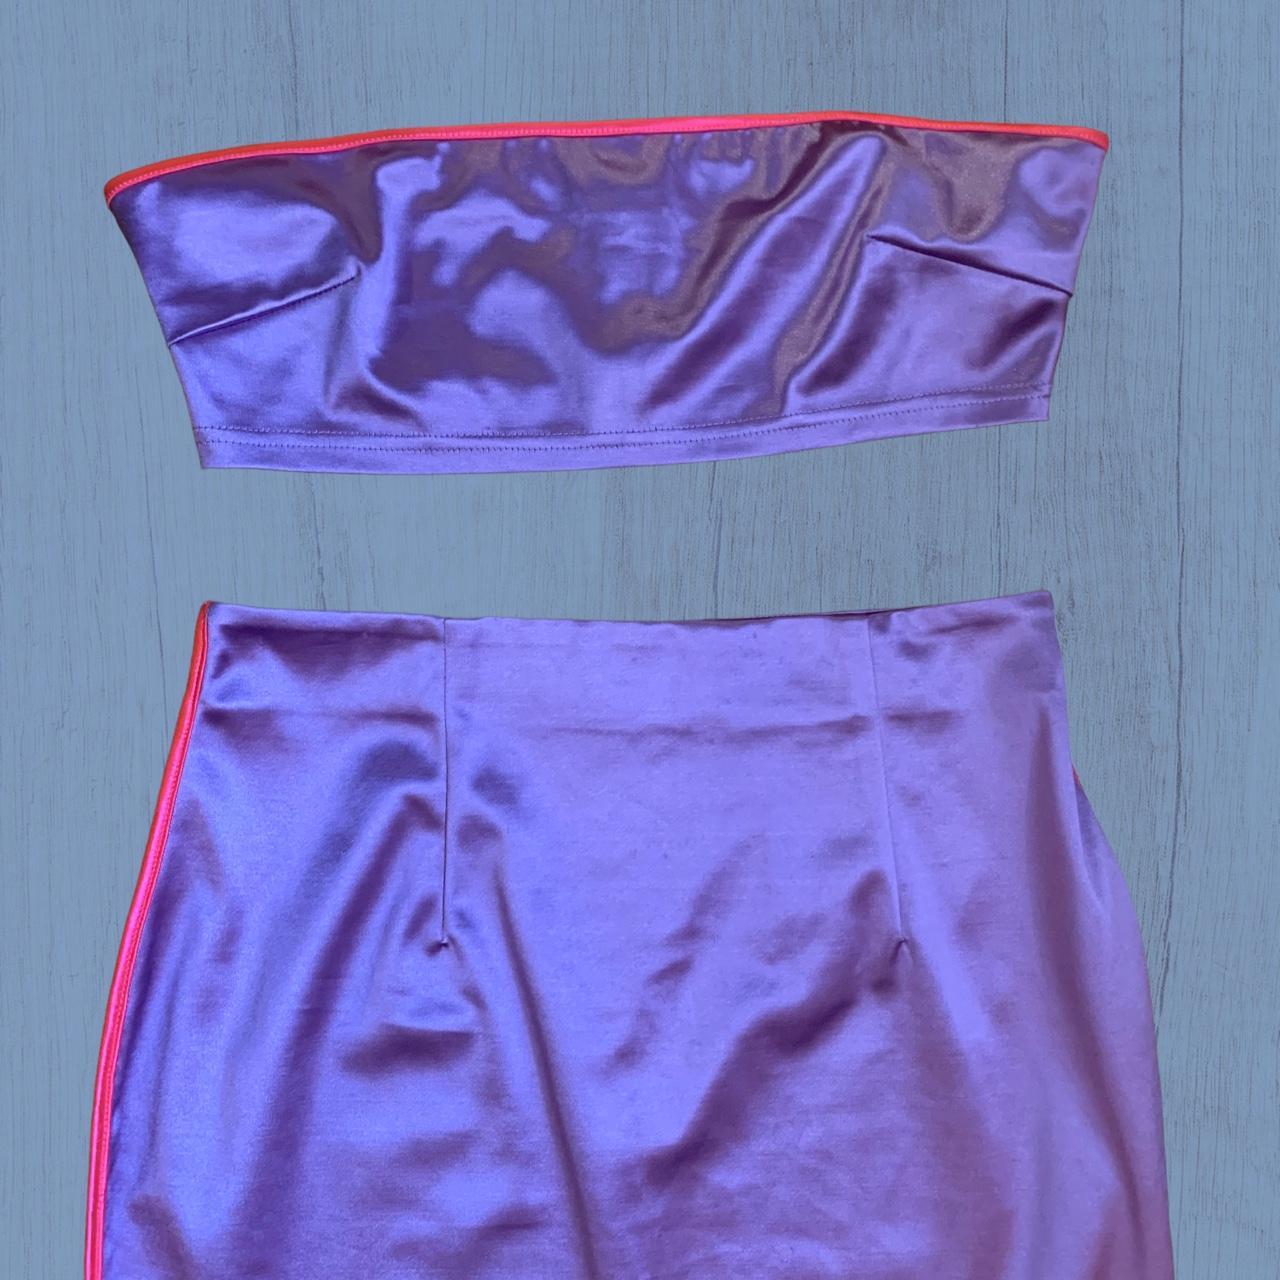 NaaNaa Women's Pink and Purple Skirt (3)